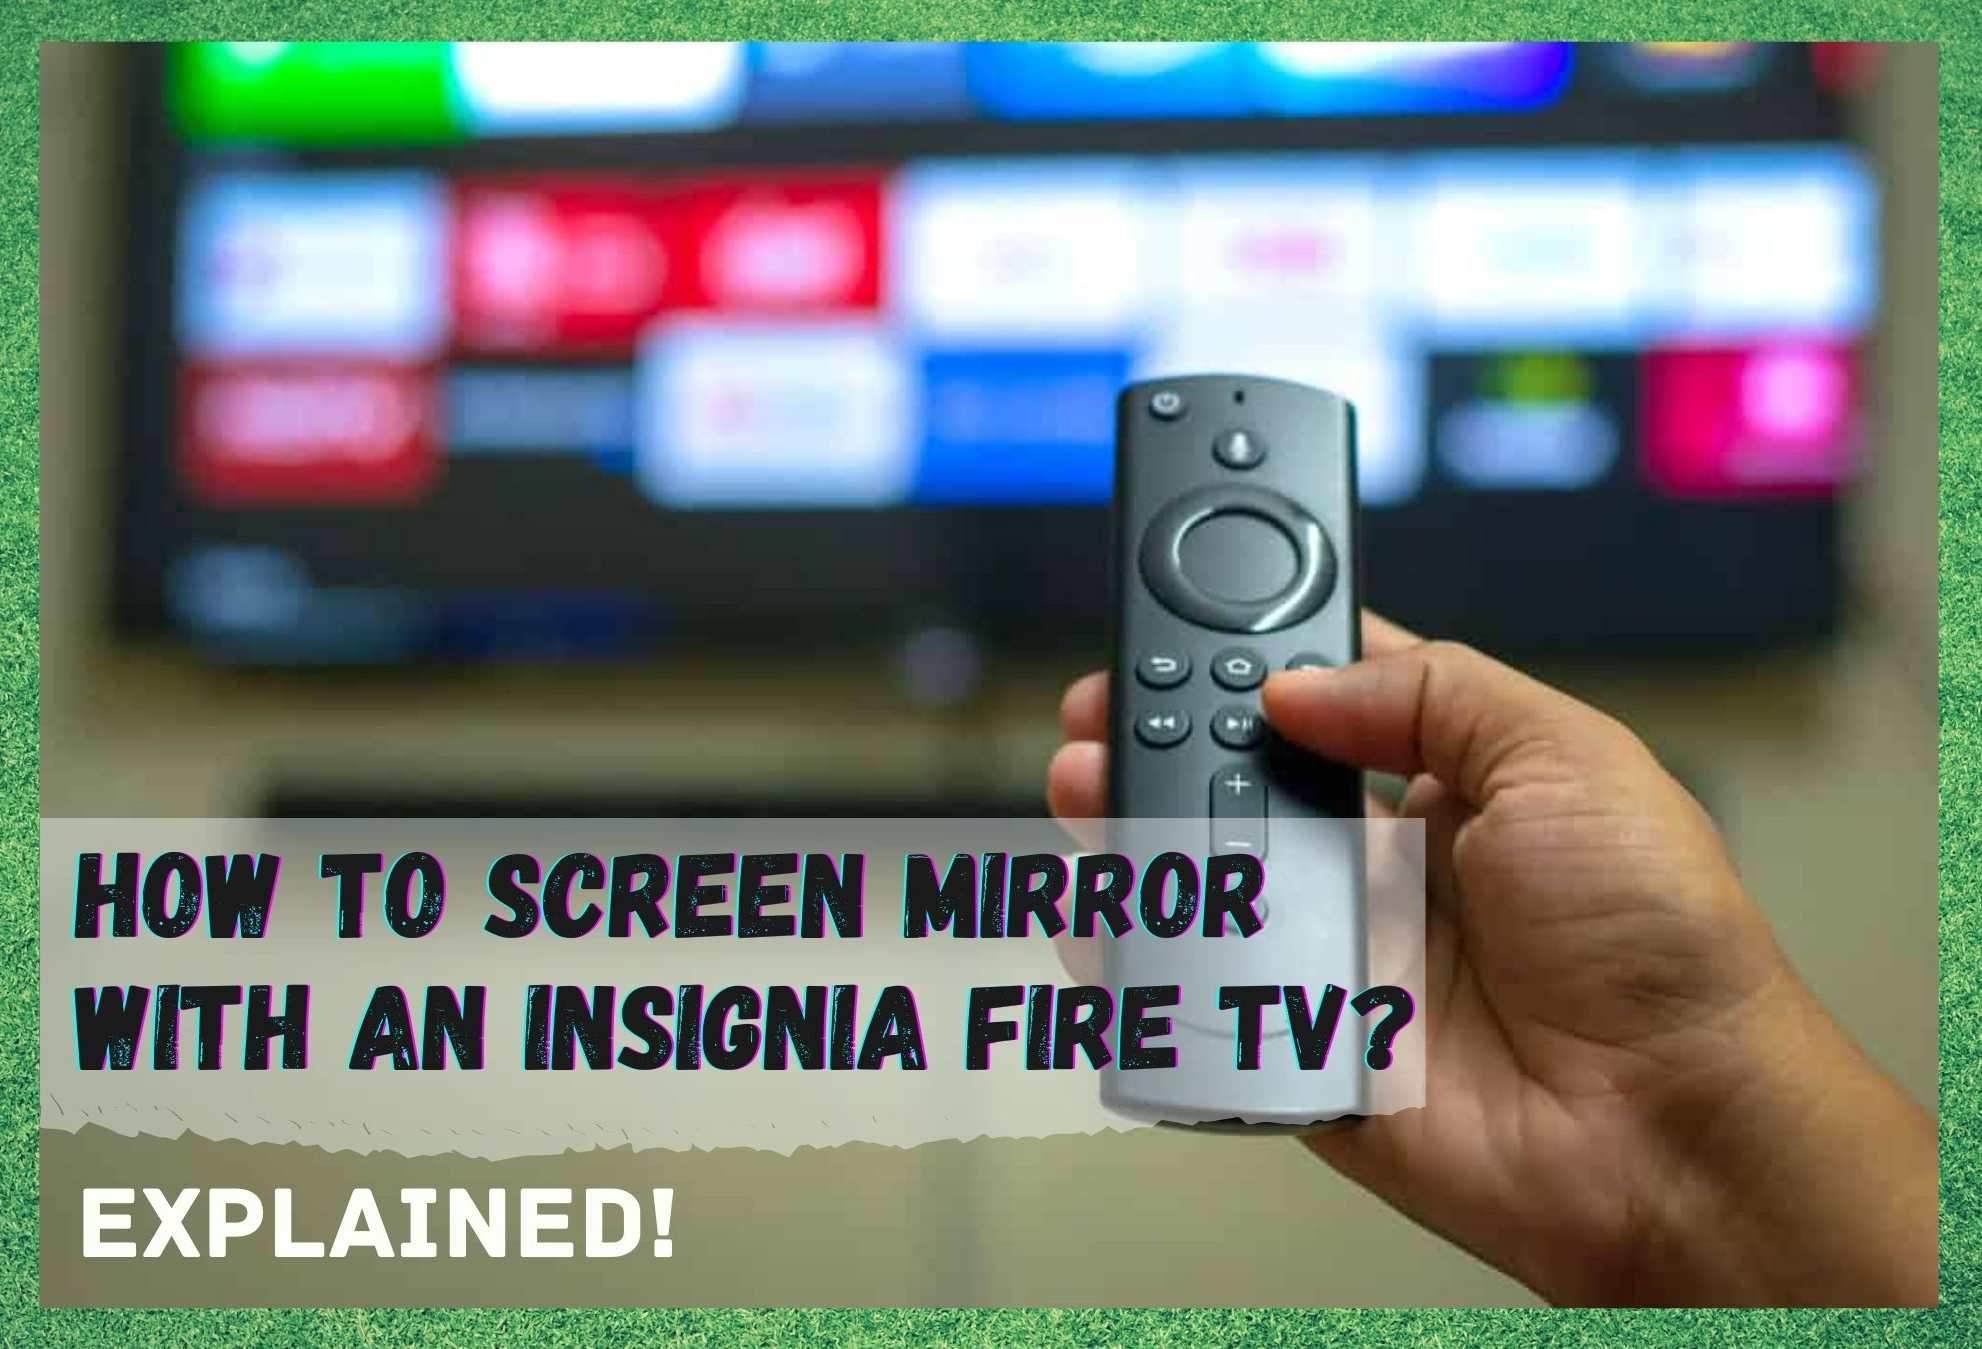 Ekran Yansıtma Insignia Fire TV'ye Nasıl Erişilir?